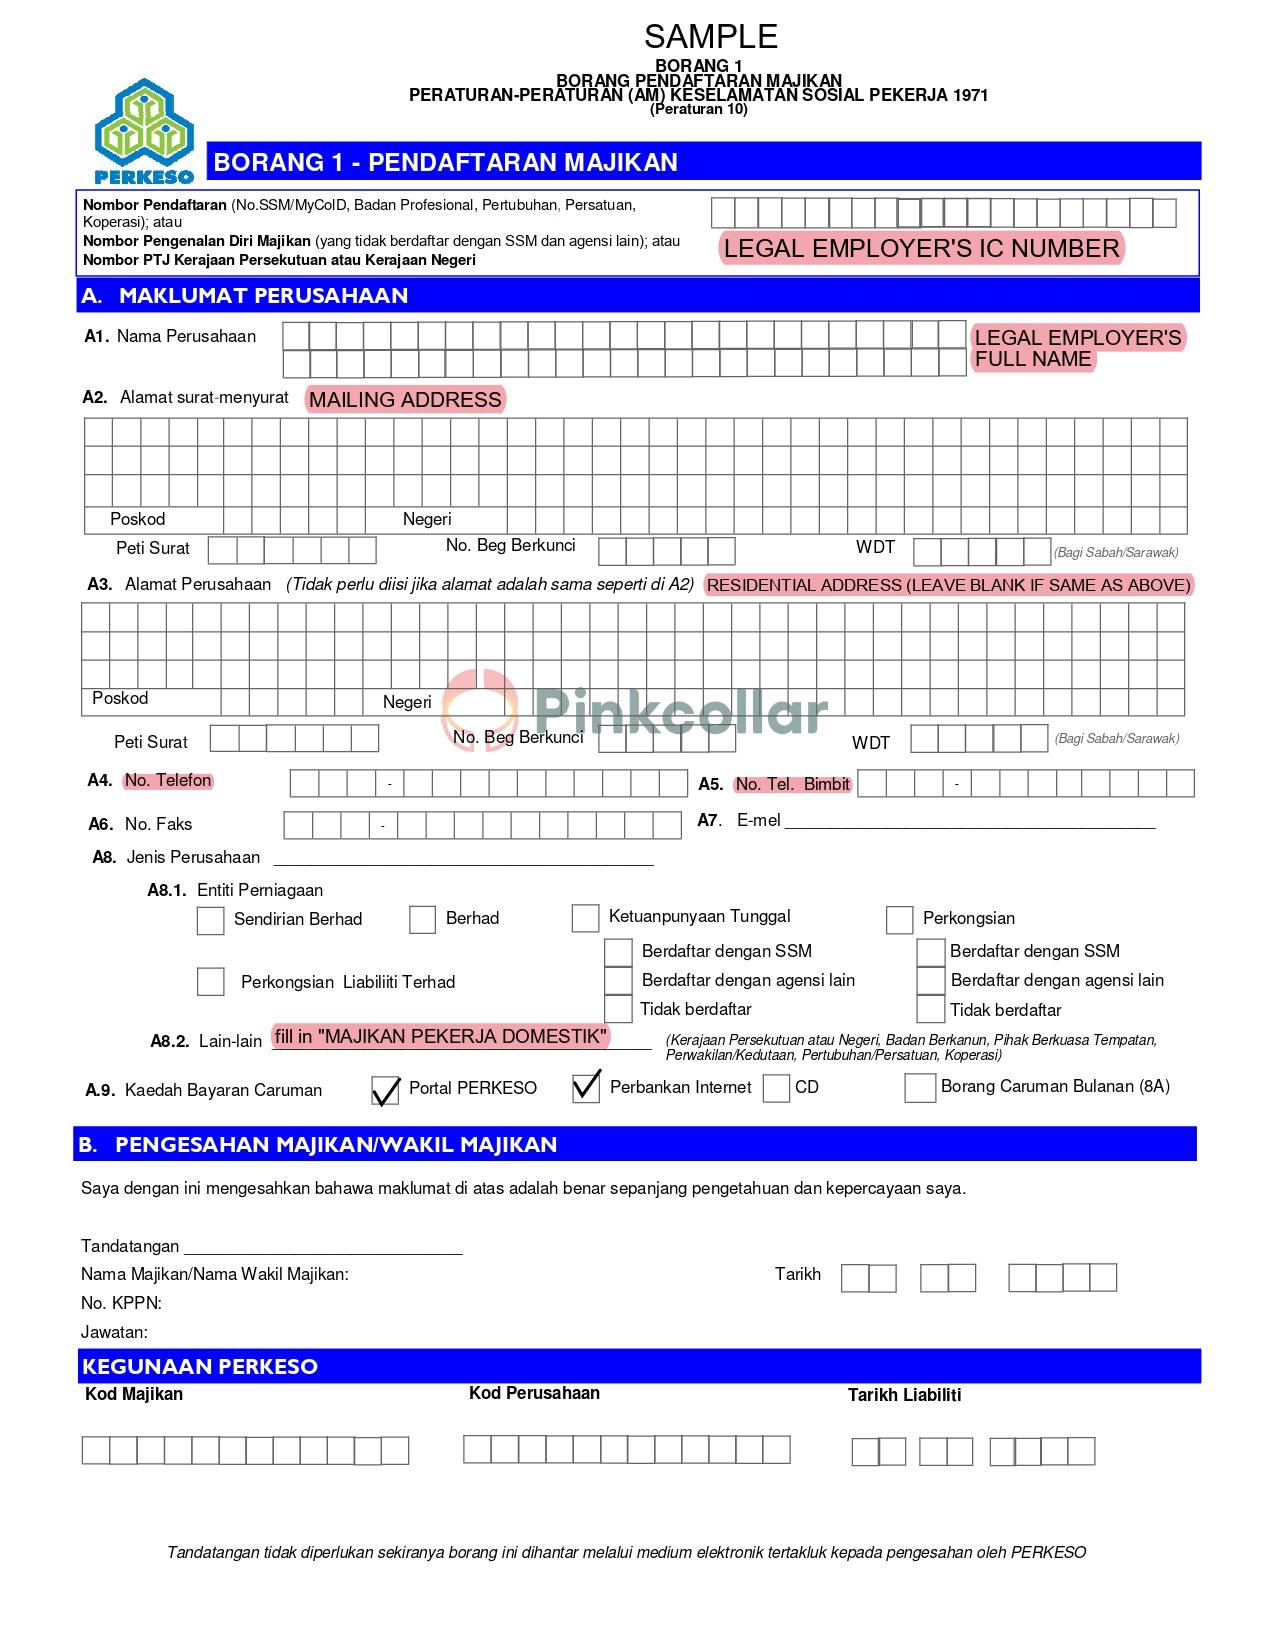 Guide for Borang Pendaftaran Majikan (Borang 1) / Employer Registration Form